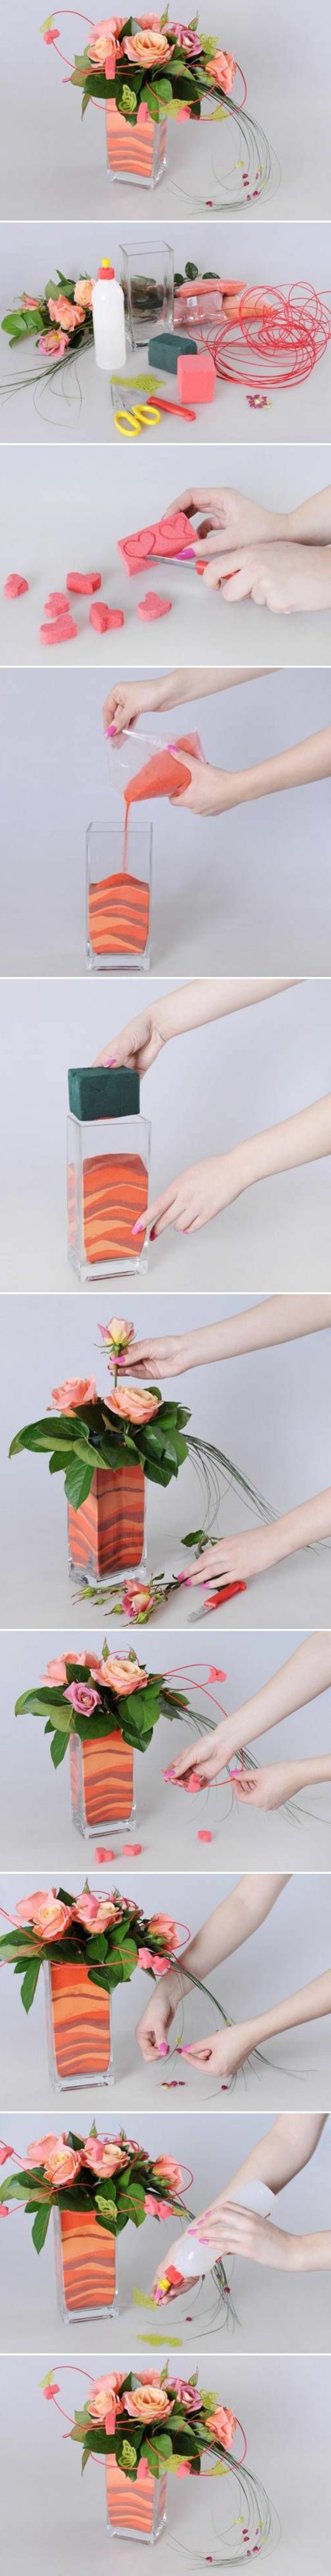 00-diy-deco-table-mariage-avec-une-vase-en-sables-colore-et-fleurs